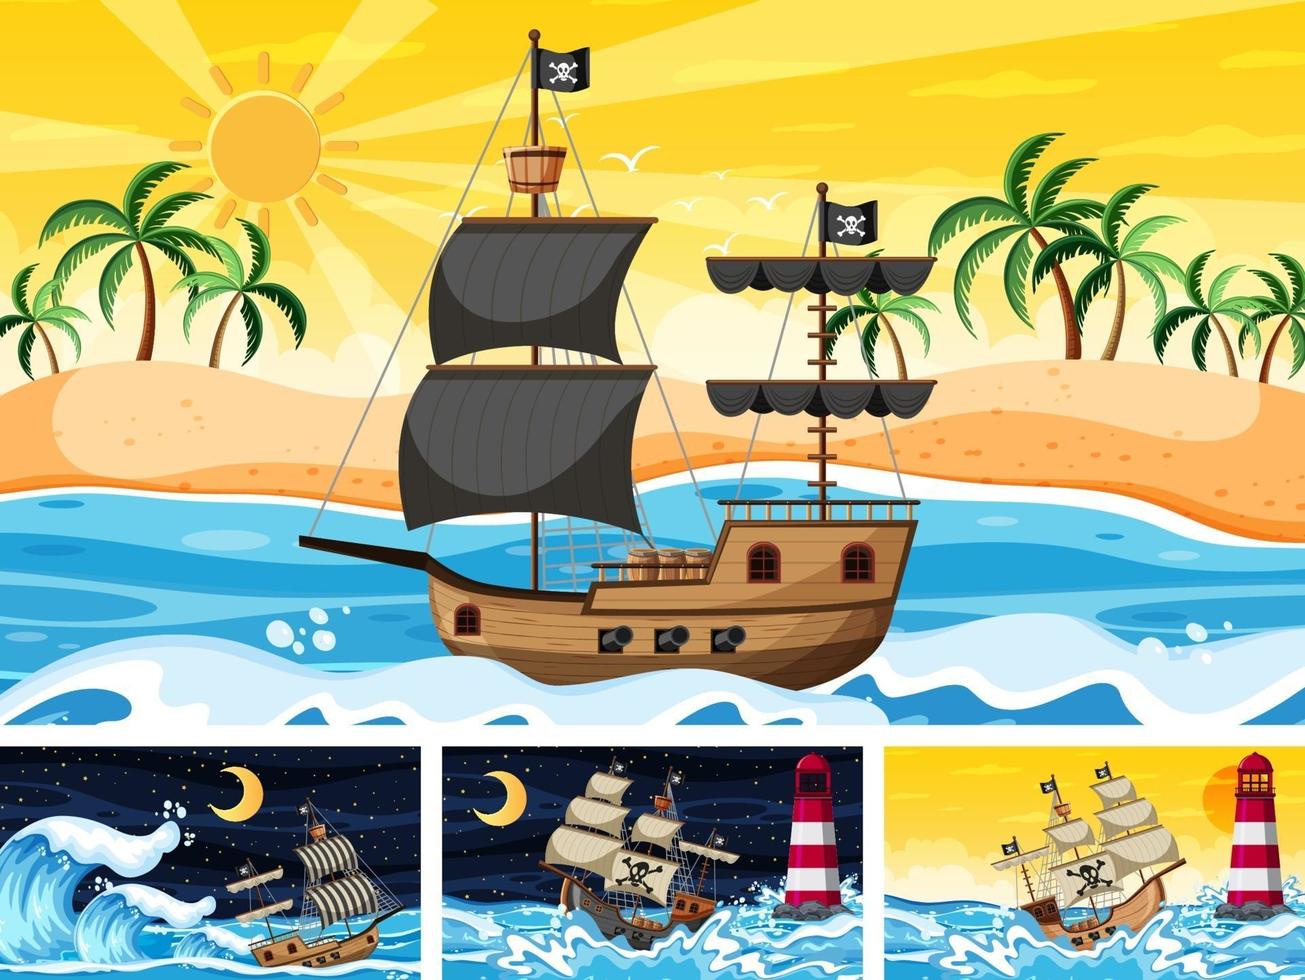 uppsättning hav med piratskepp vid olika tidpunkter scener i tecknad stil vektor